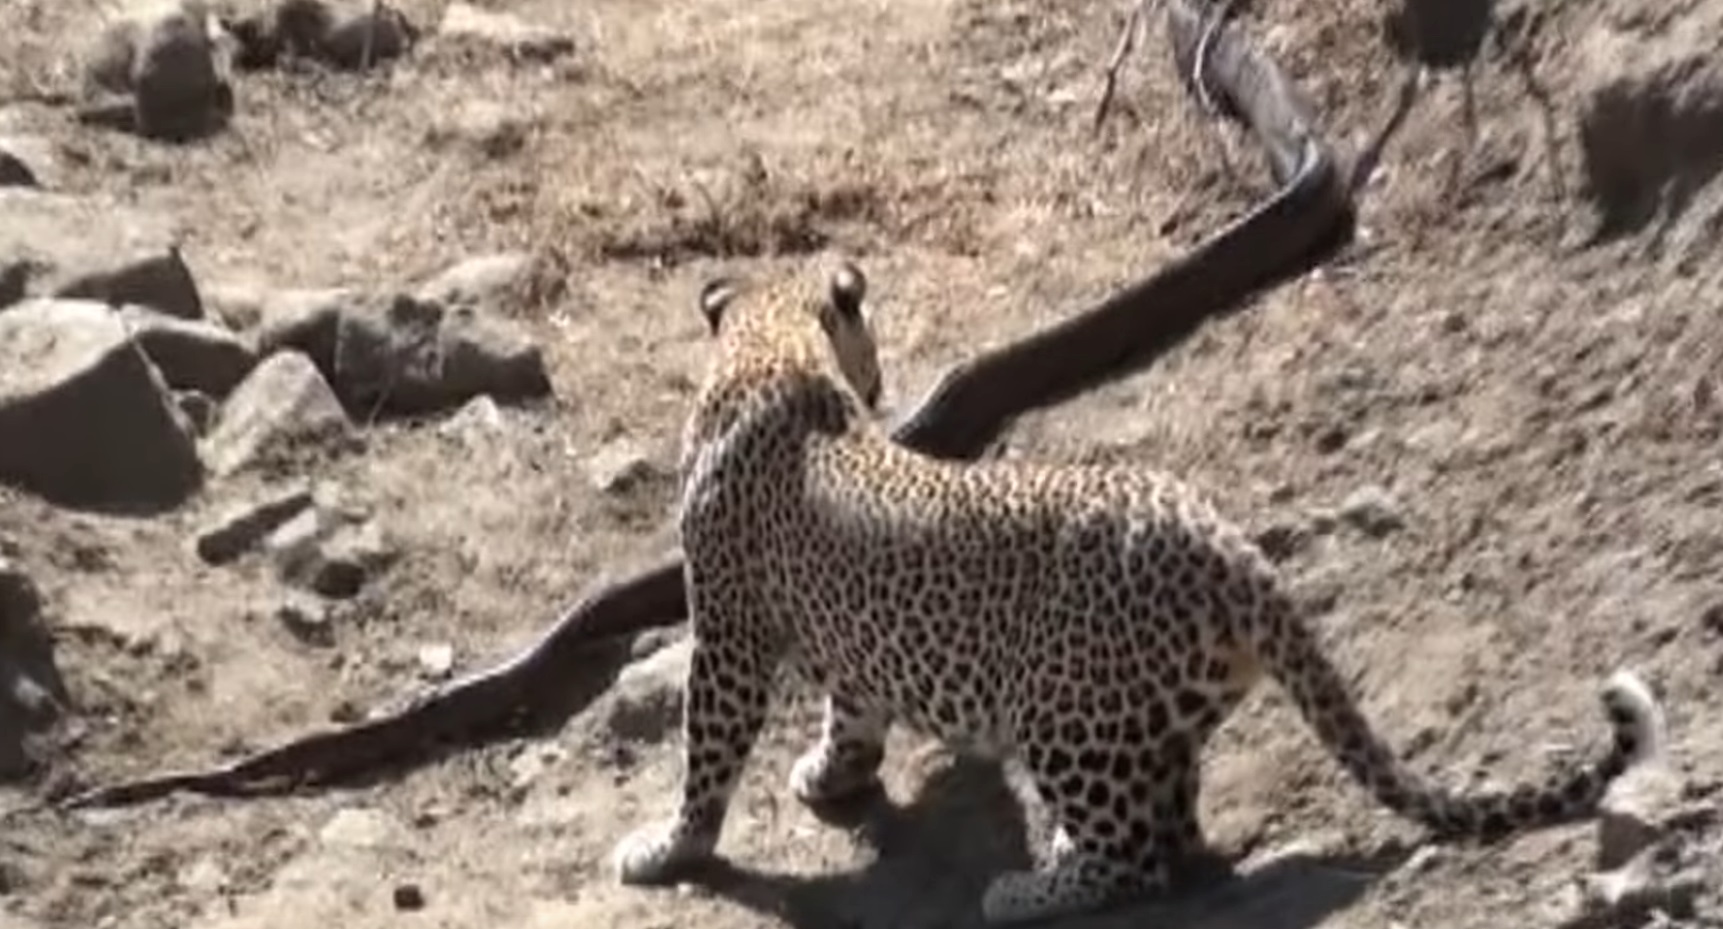 Leopard Attacks Python In Kruger